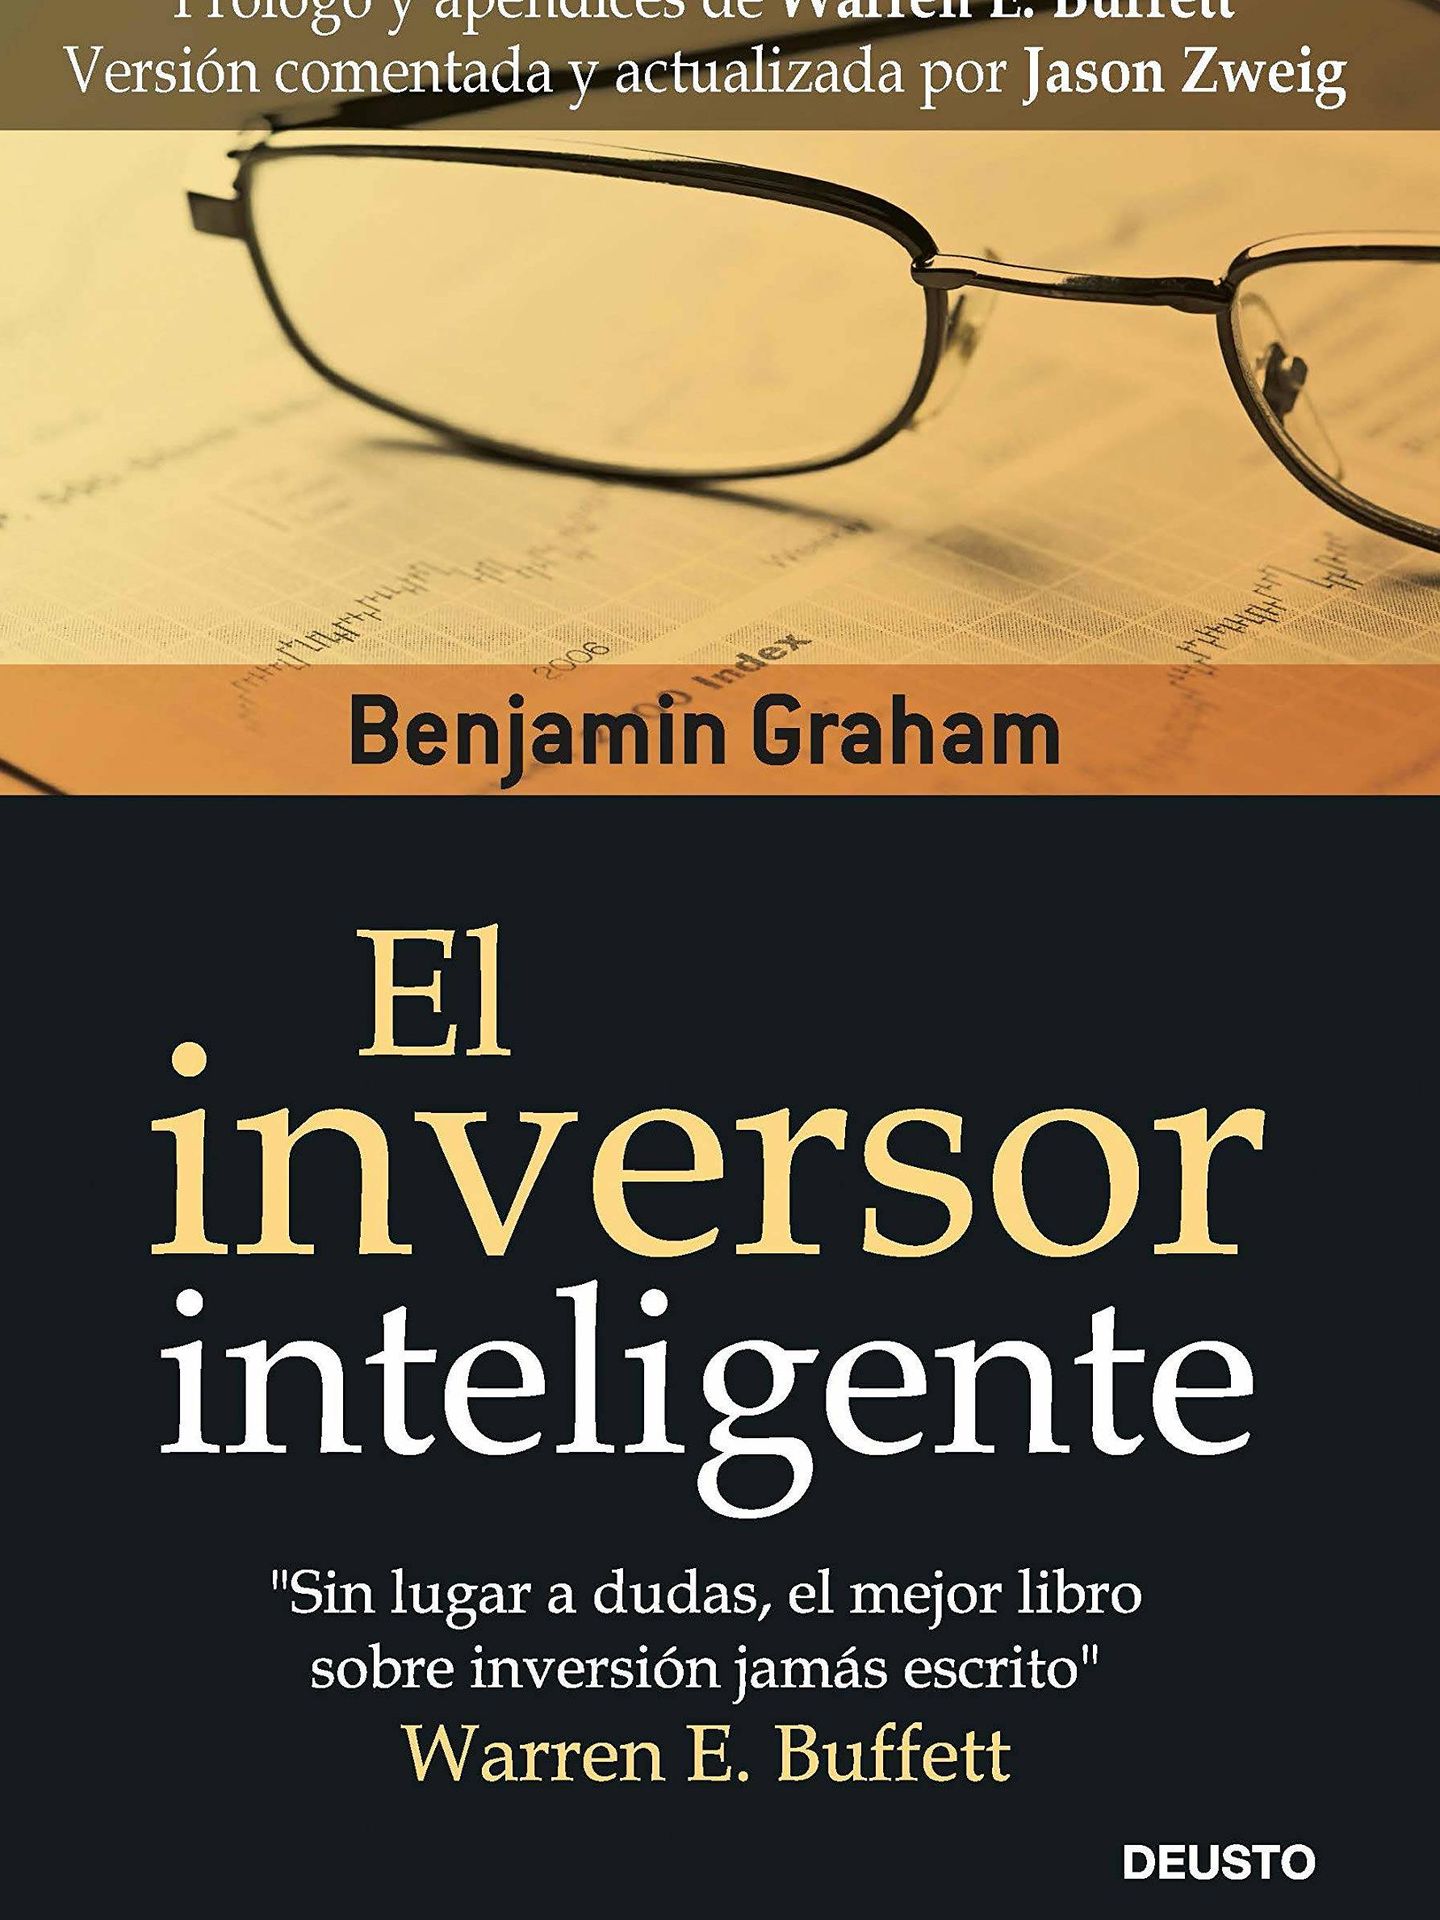 'El inversor inteligente' (Deusto).